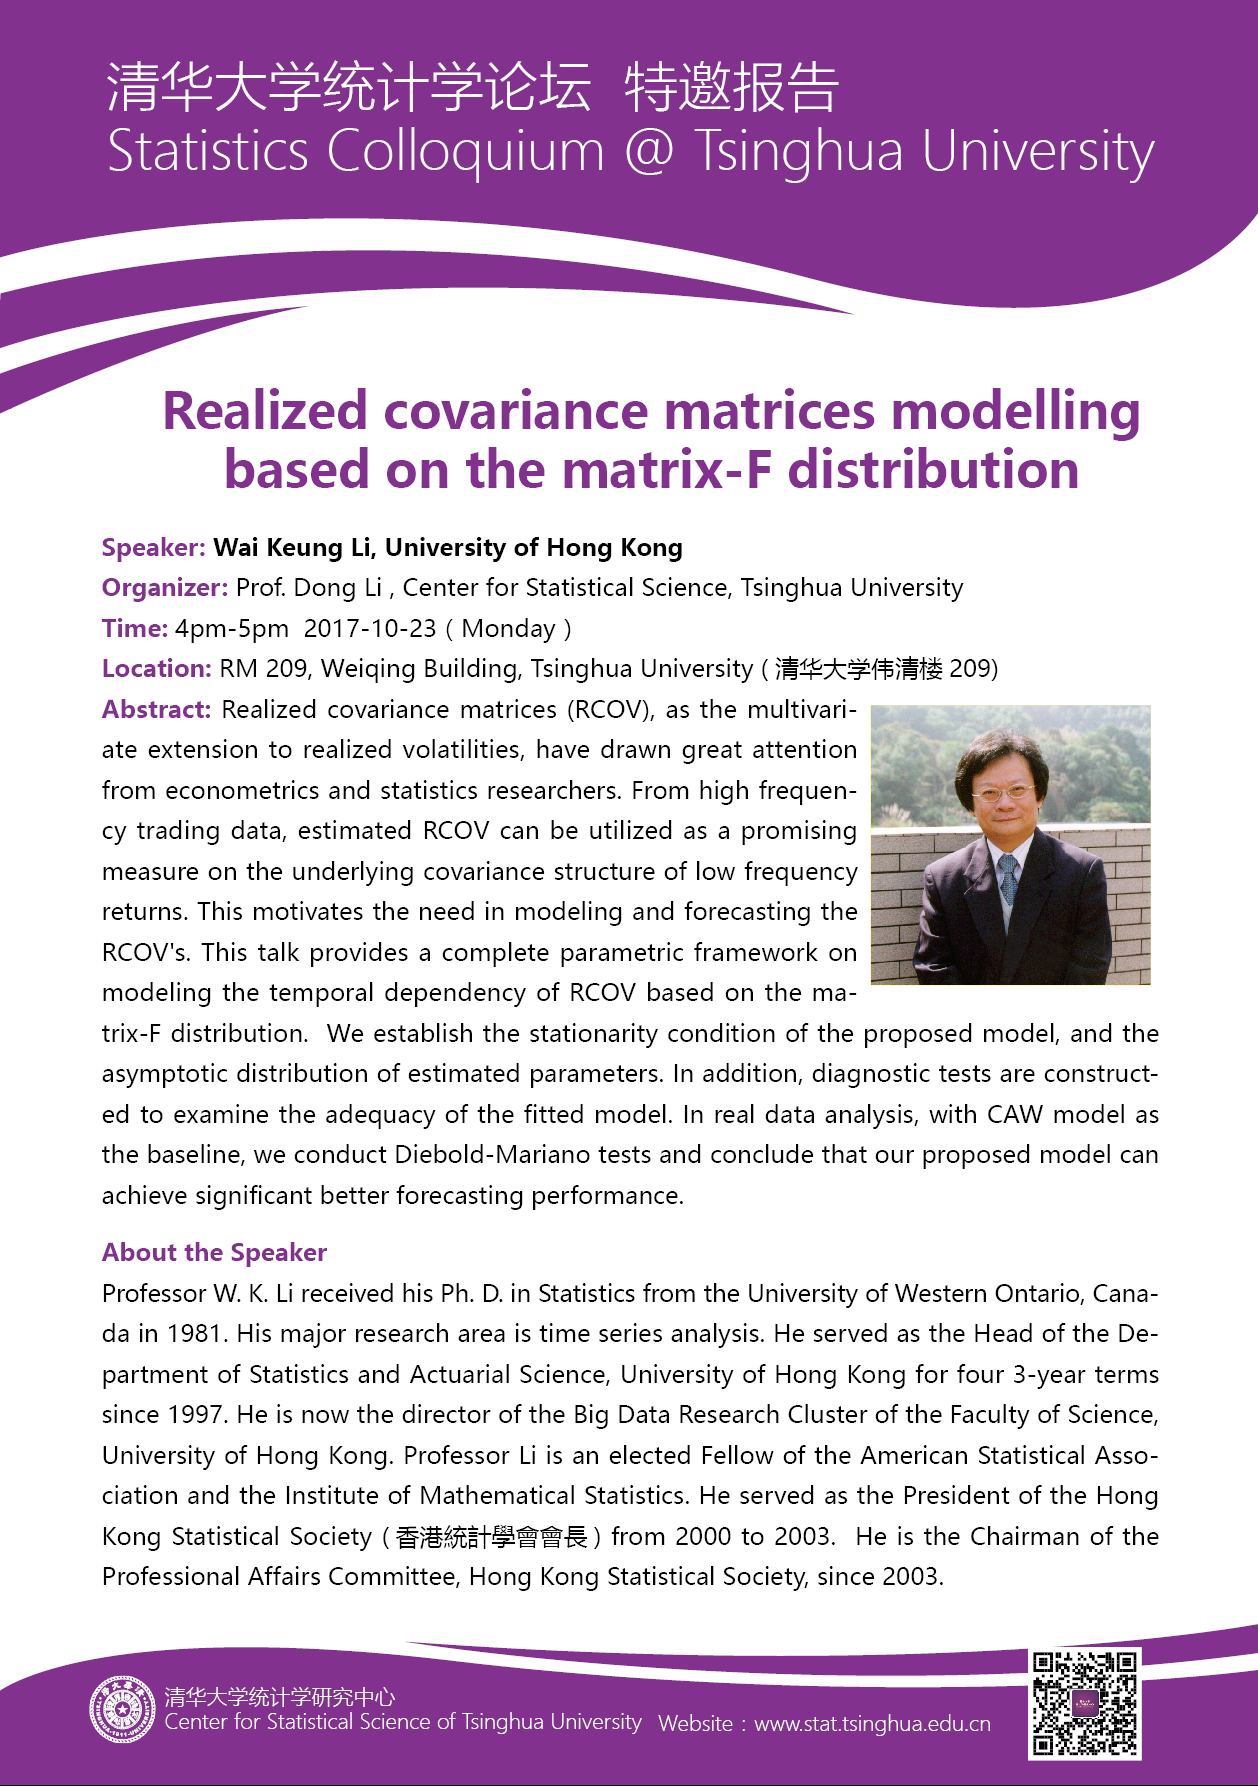 【统计学论坛】Realized covariance matrices modelling based on the matrix-F distribution